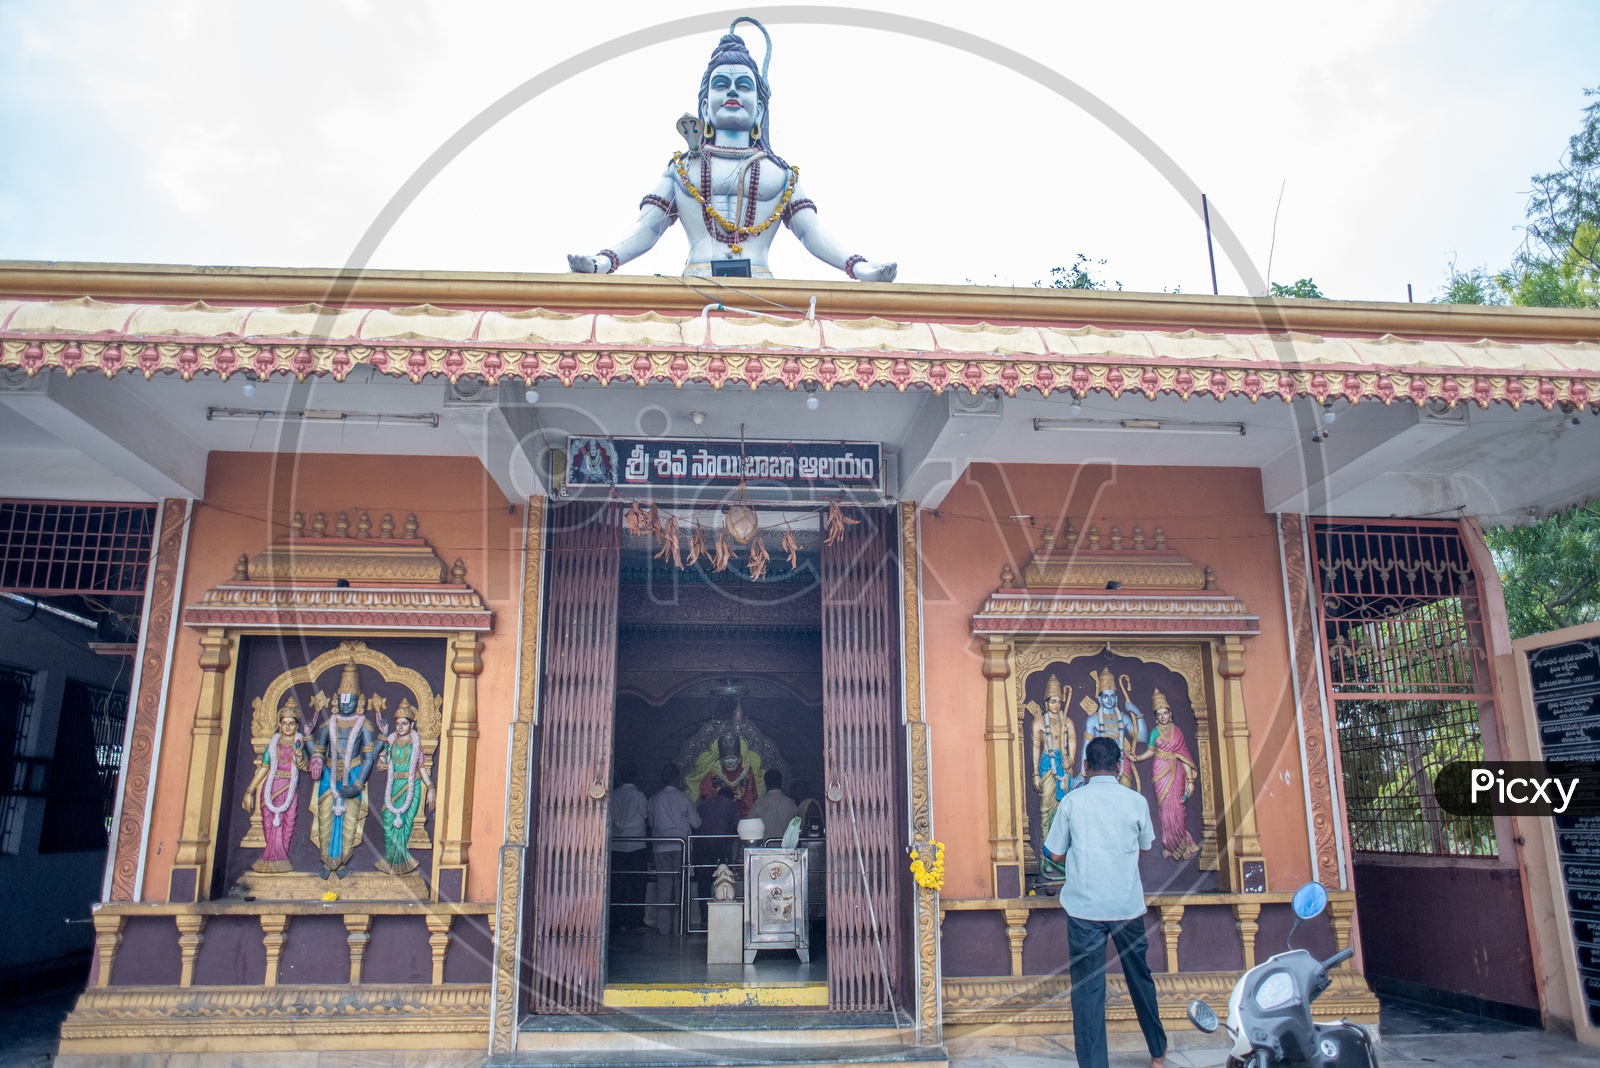 Sri shiva said baba temple